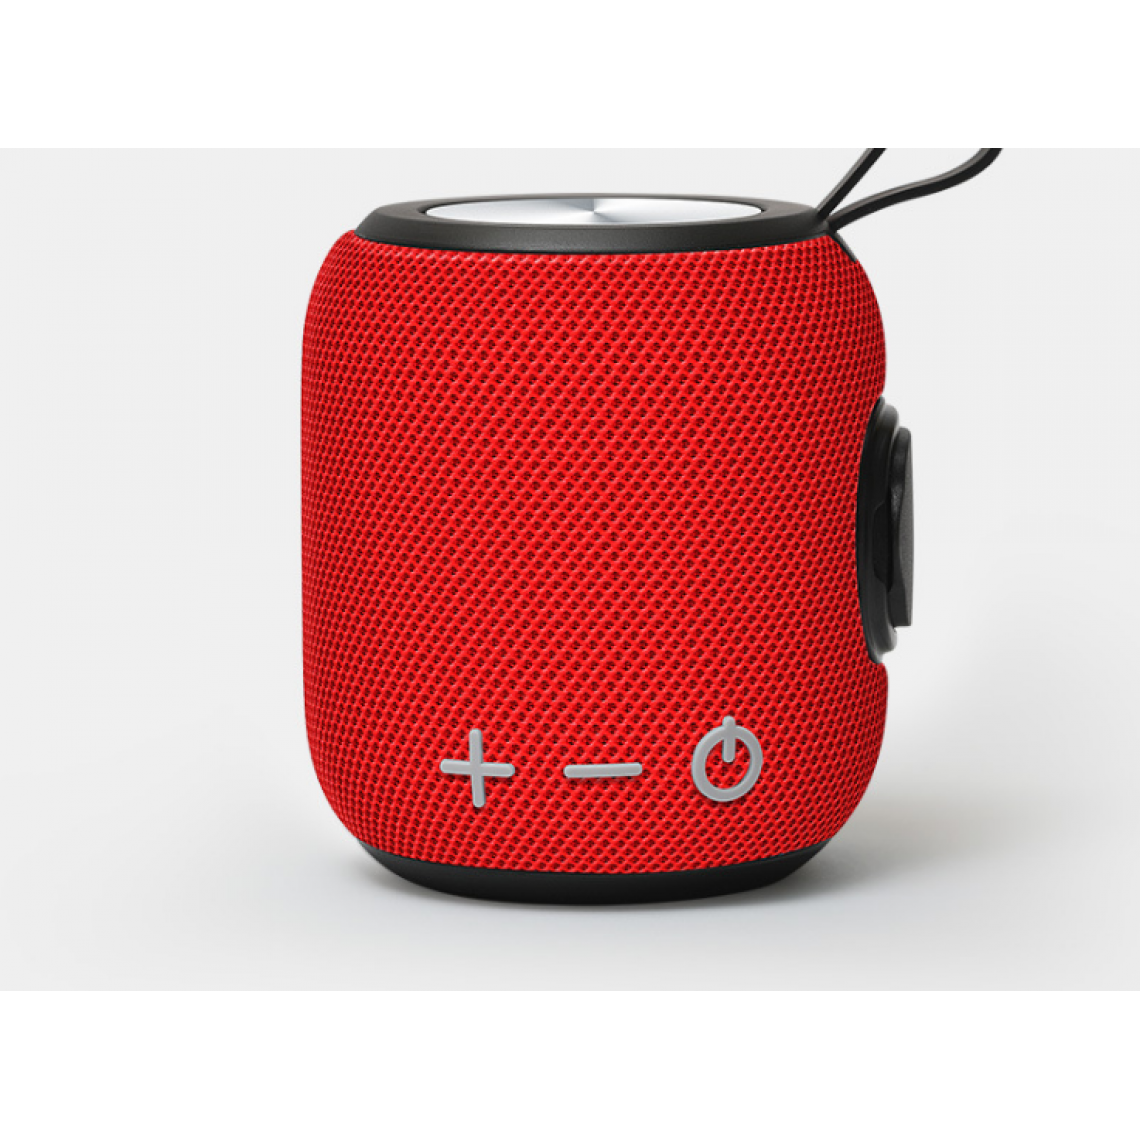 Universal - Haut-parleur Bluetooth sans fil portable en tissu extérieur 360 HD stéréo, IPX7 étanche haut-parleur magnétique intégral 1800 mAh | haut-parleur extérieur (rouge) - Hauts-parleurs